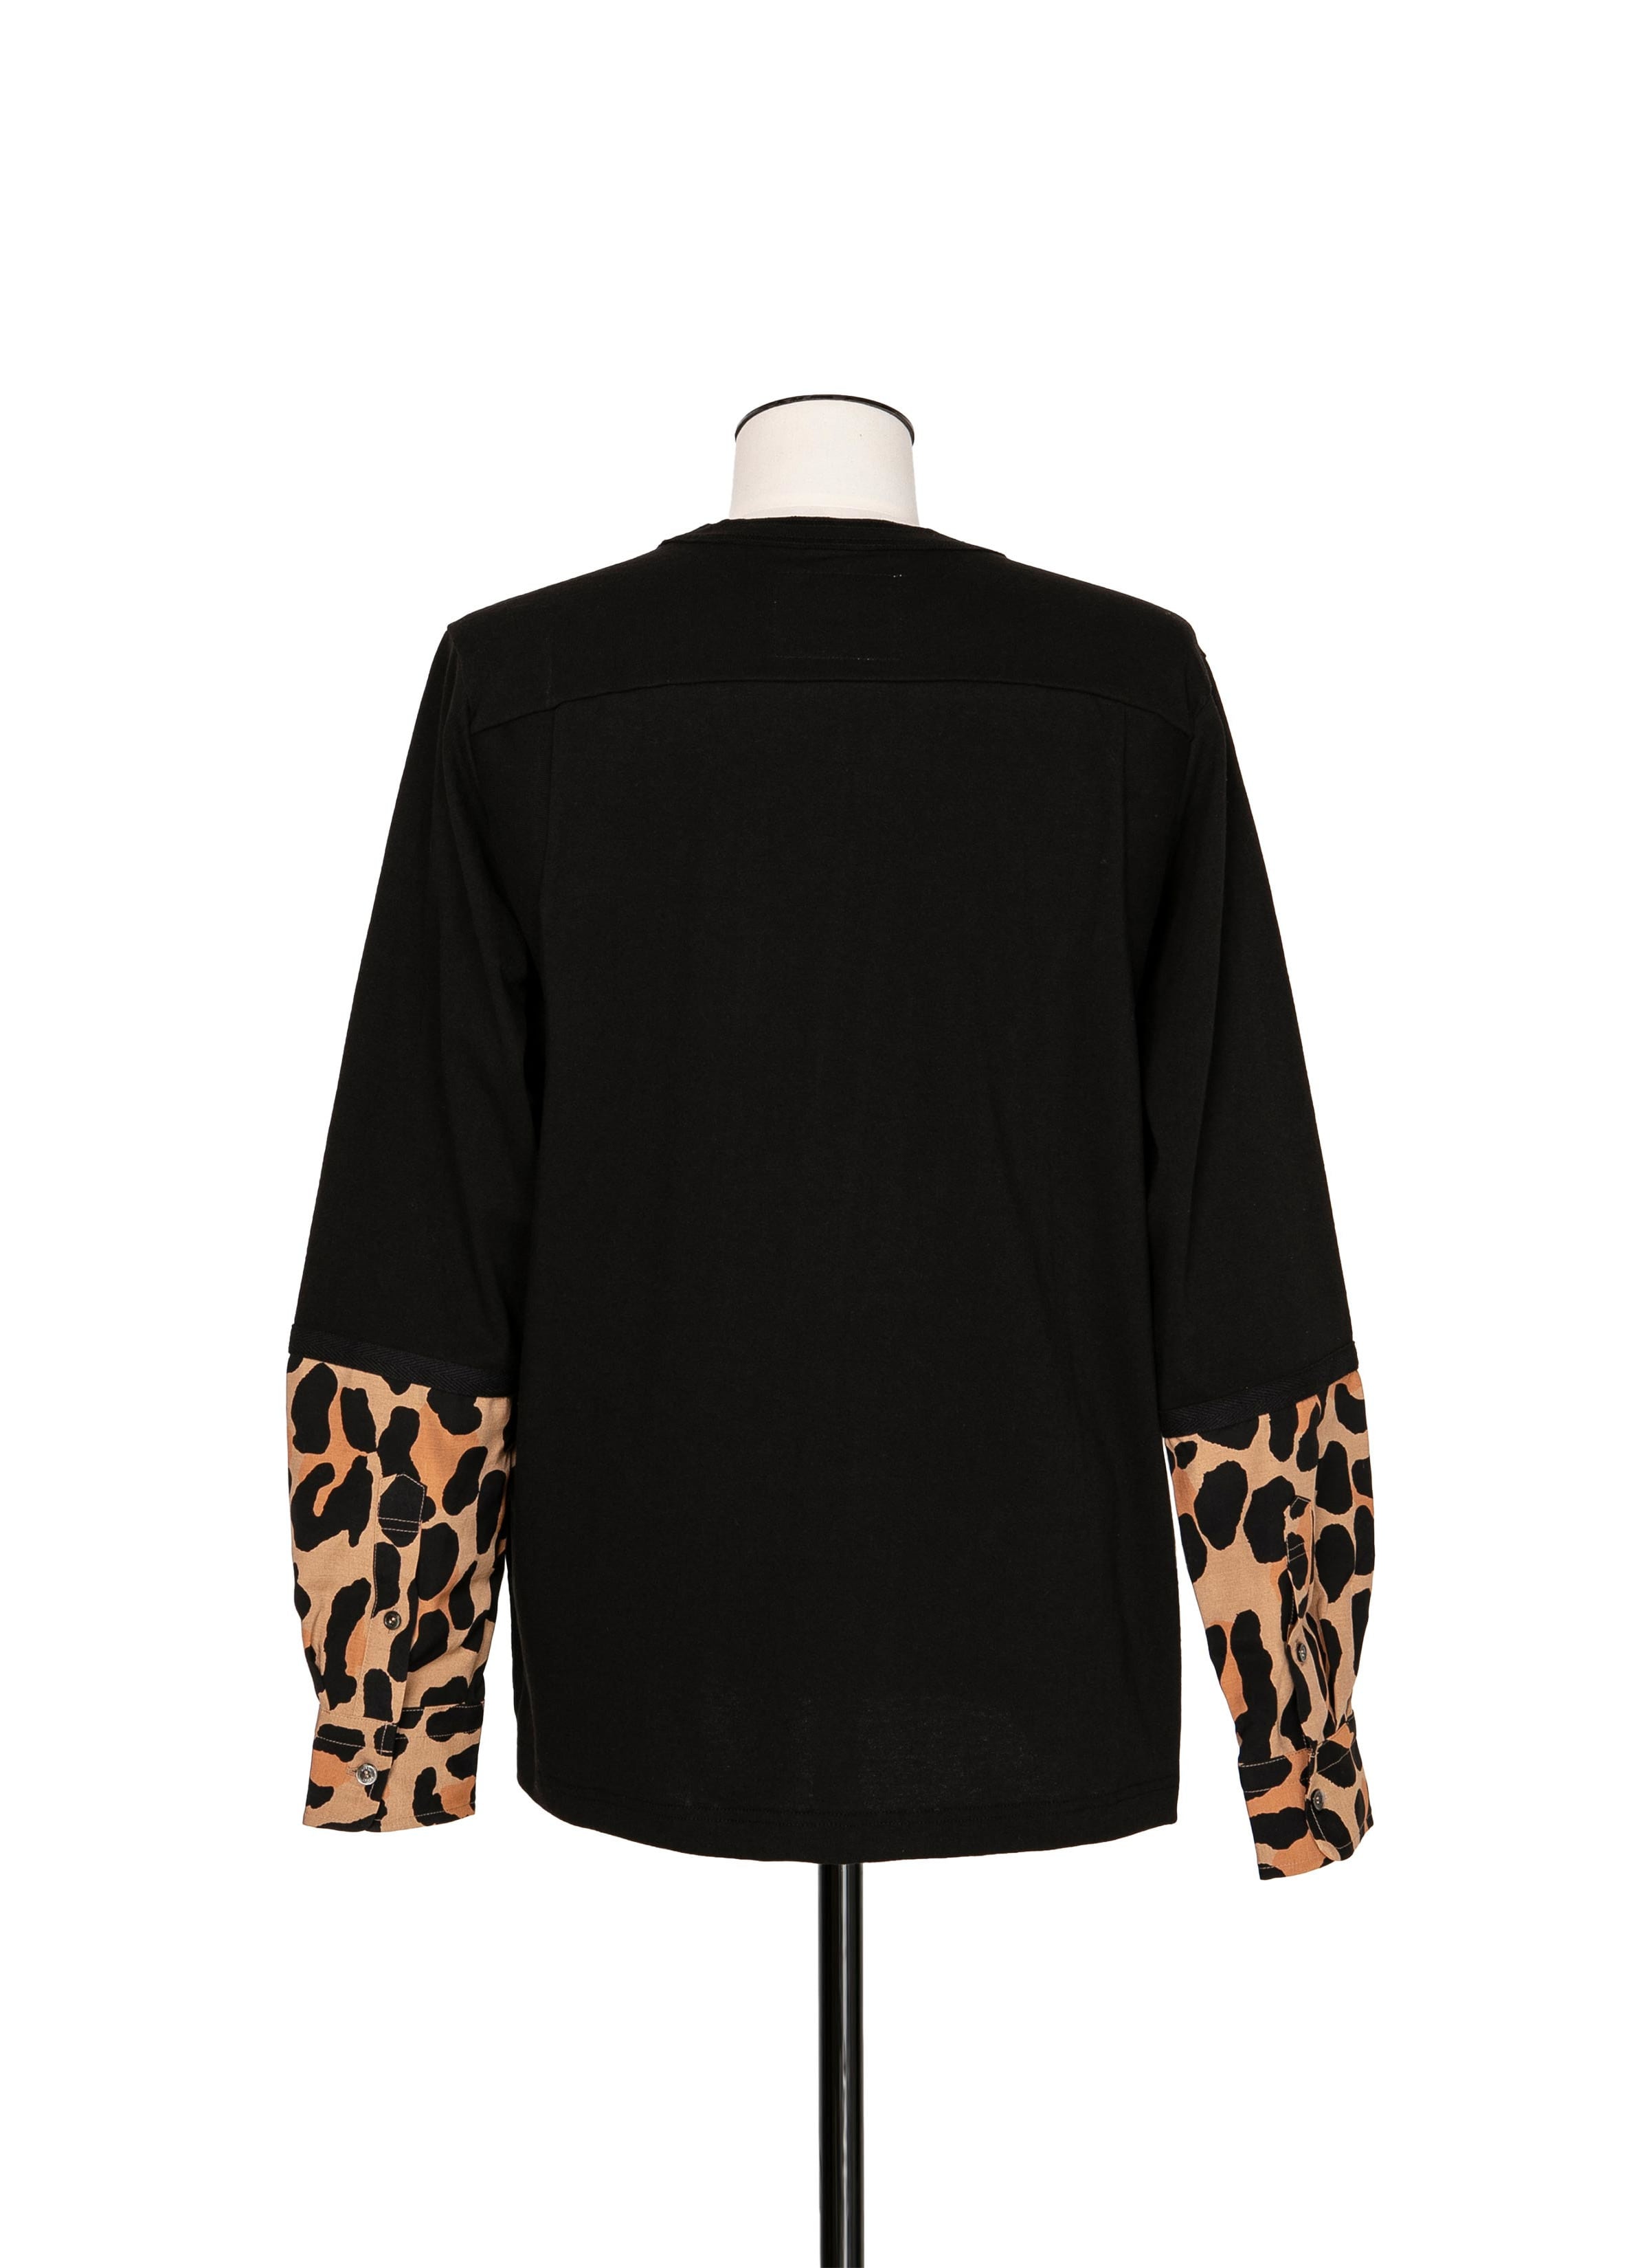 Leopard Print L/S T-Shirt 詳細画像 BLACK×BEIGE 3